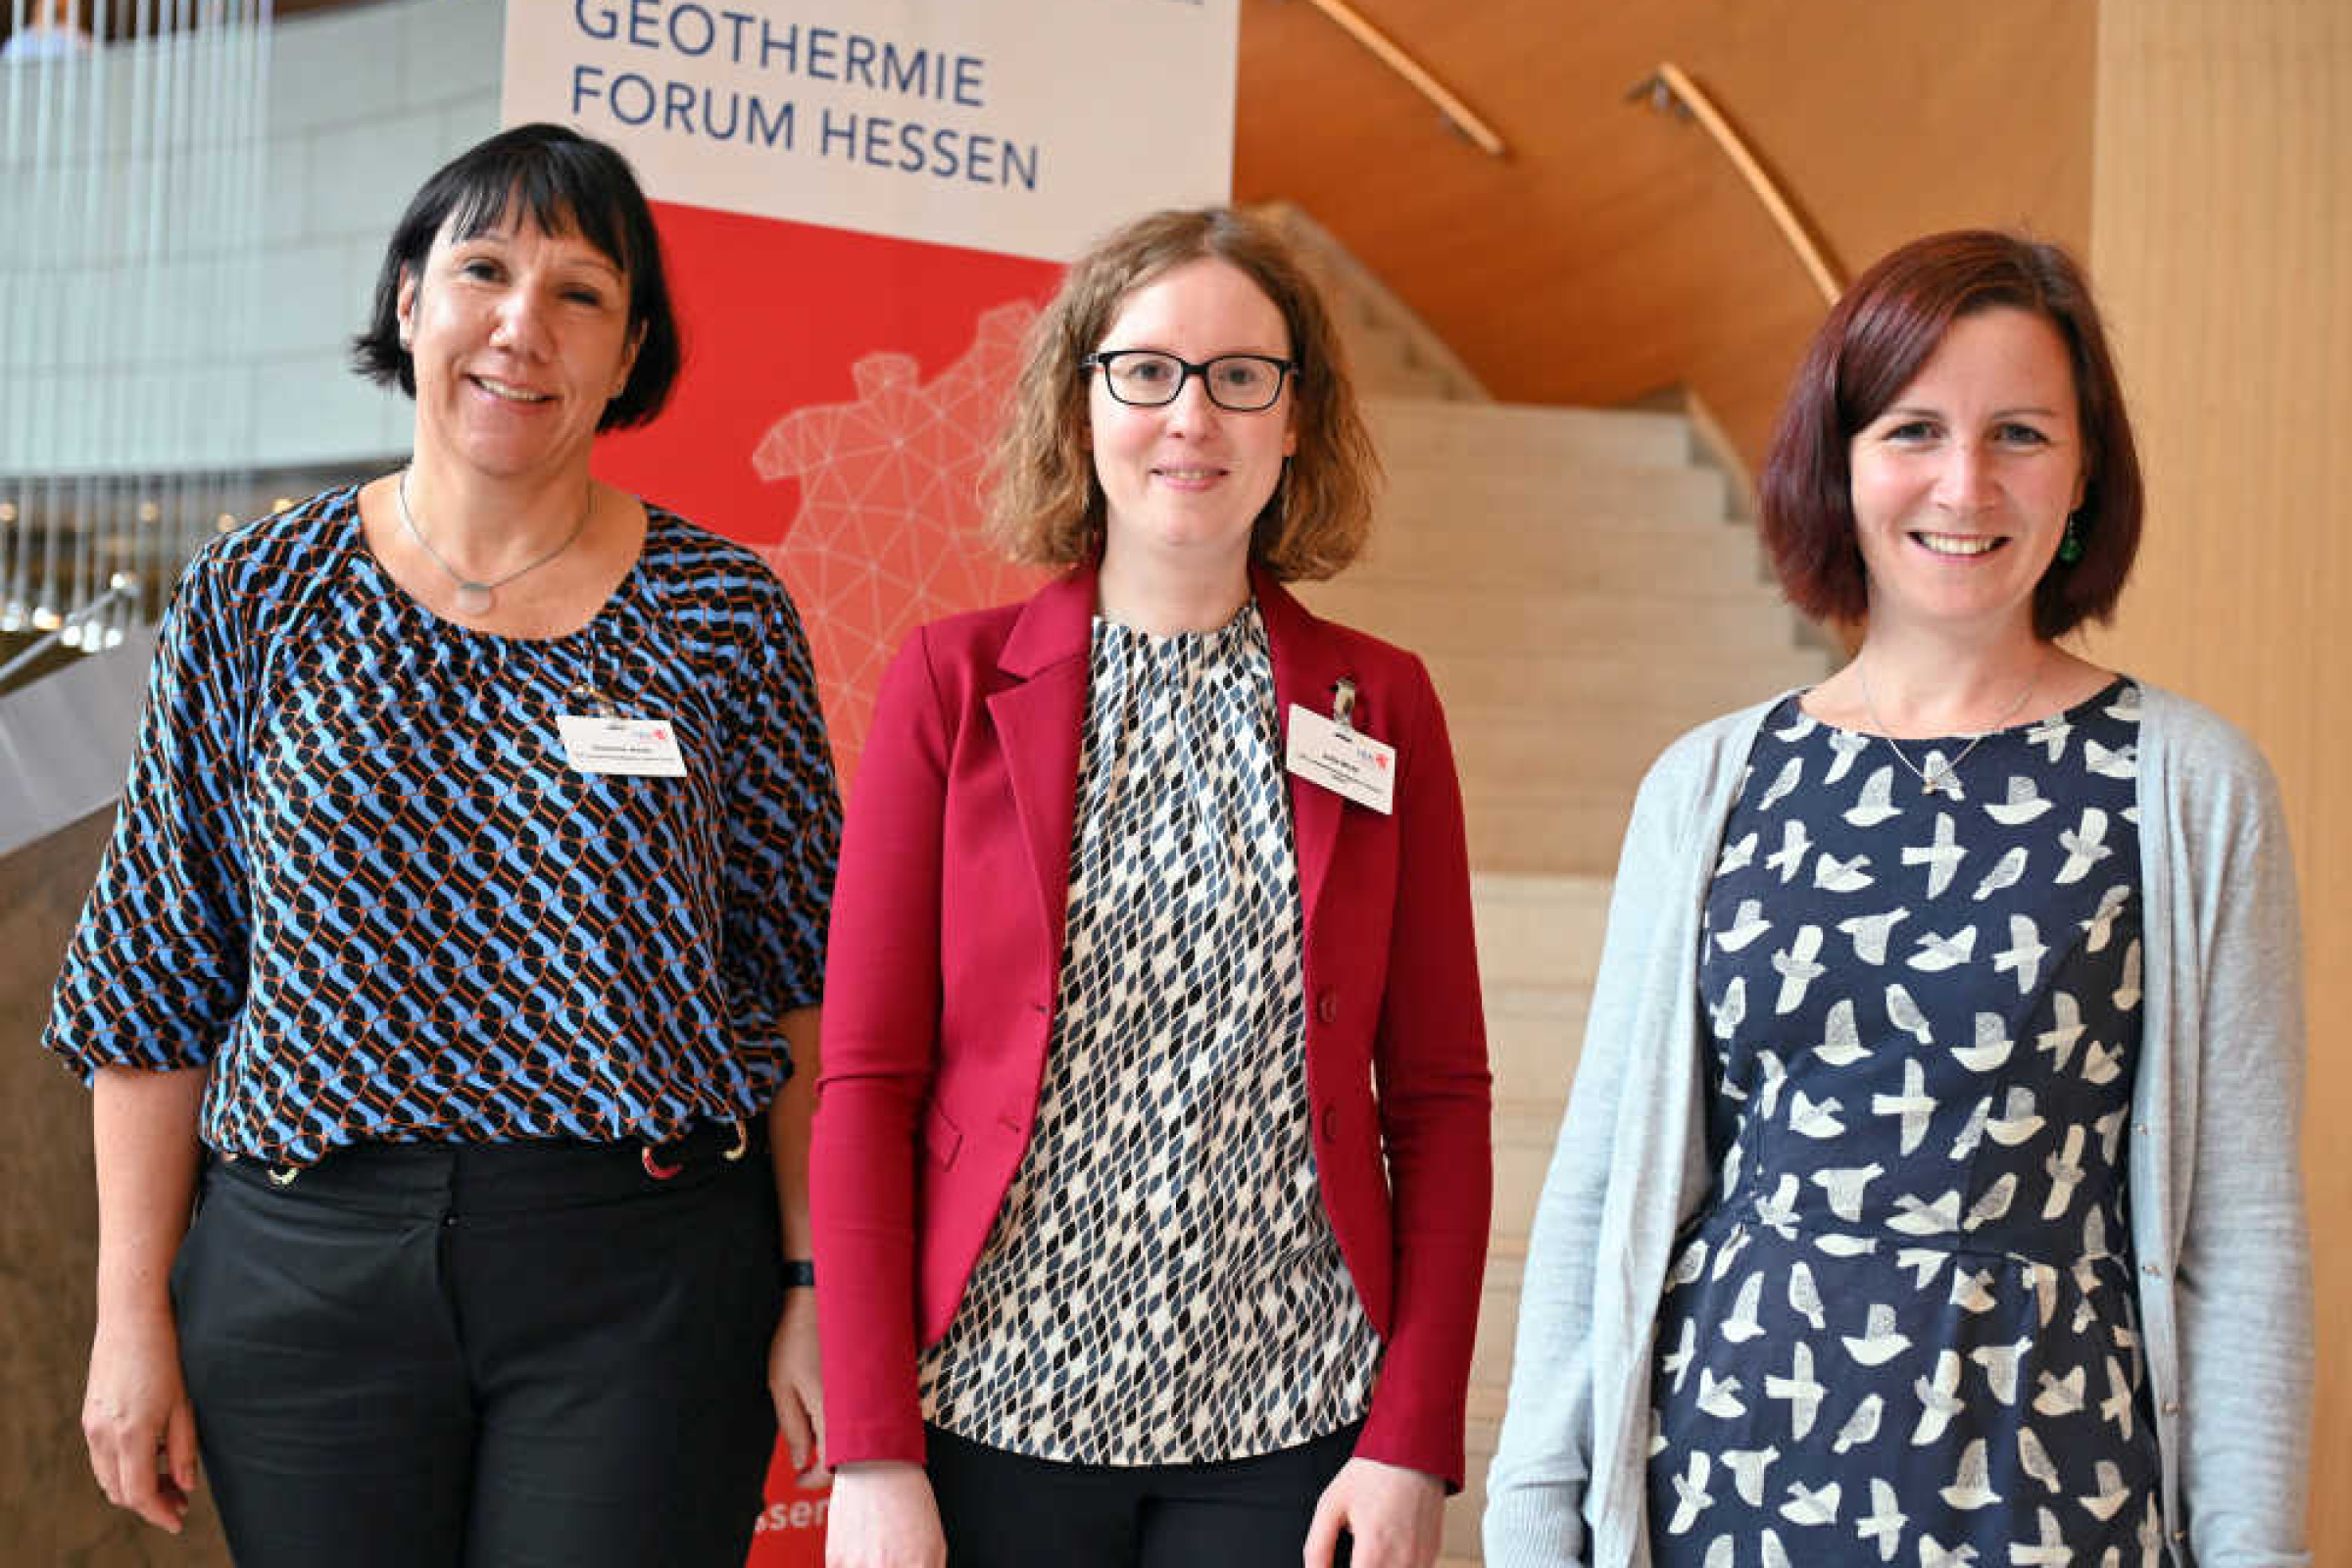 Drei Frauen stehen nebeneinander vor einer Treppe und lächeln. Hinter ihnen ist eine Stellwand mit der Aufschrift "Geothermie Forum Hessen".